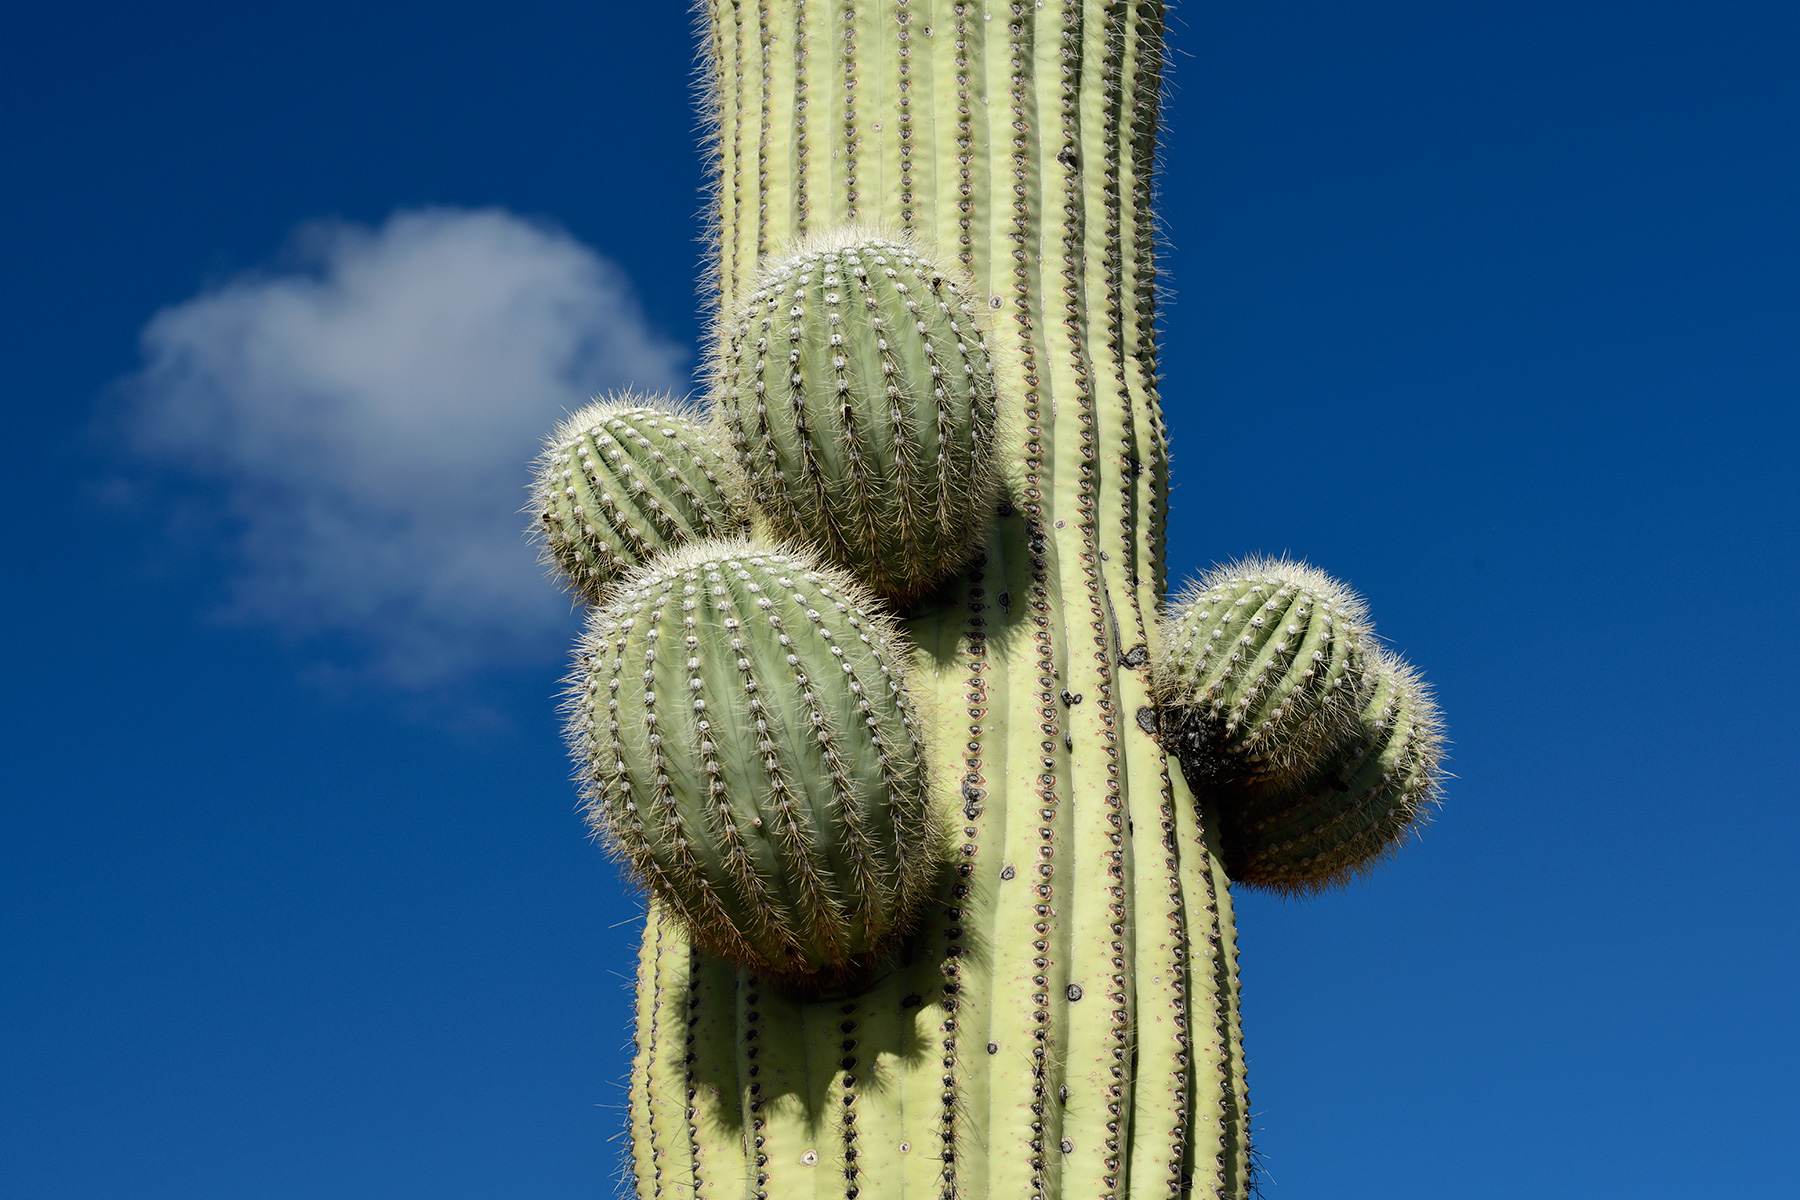 Parc National de Organ Pipe Cactus (Arizona, USA) - Cactus Saguaro avec pousses sur son tronc